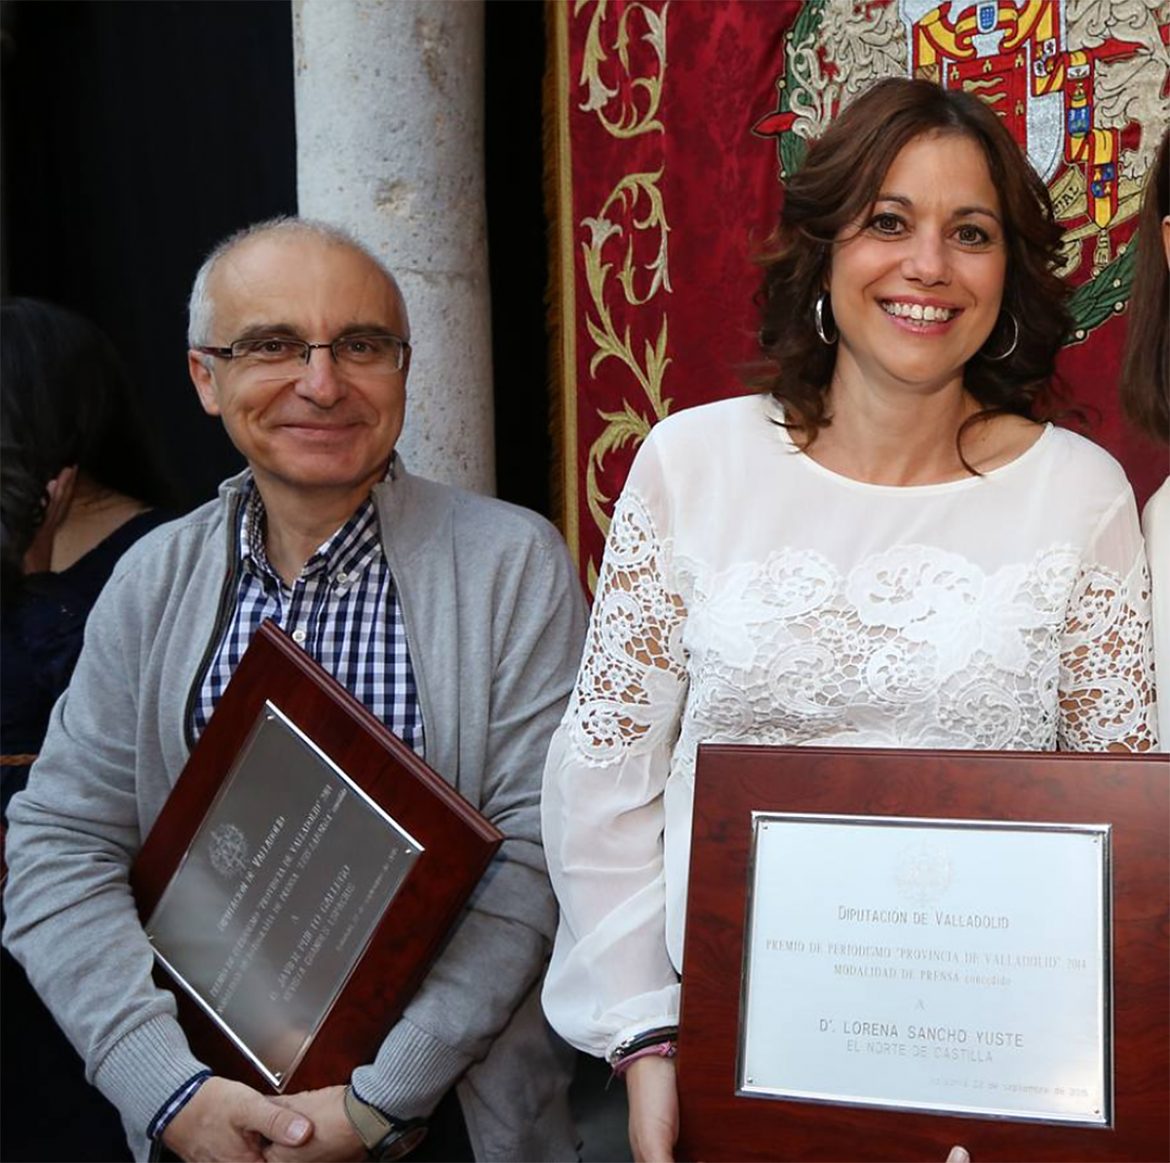 Entrega de los Premios de Periodismo Provincia de Valladolid 2014. Palacio de Pimentel. Valladolid. Castilla y León. España © Javier Prieto Gallego.